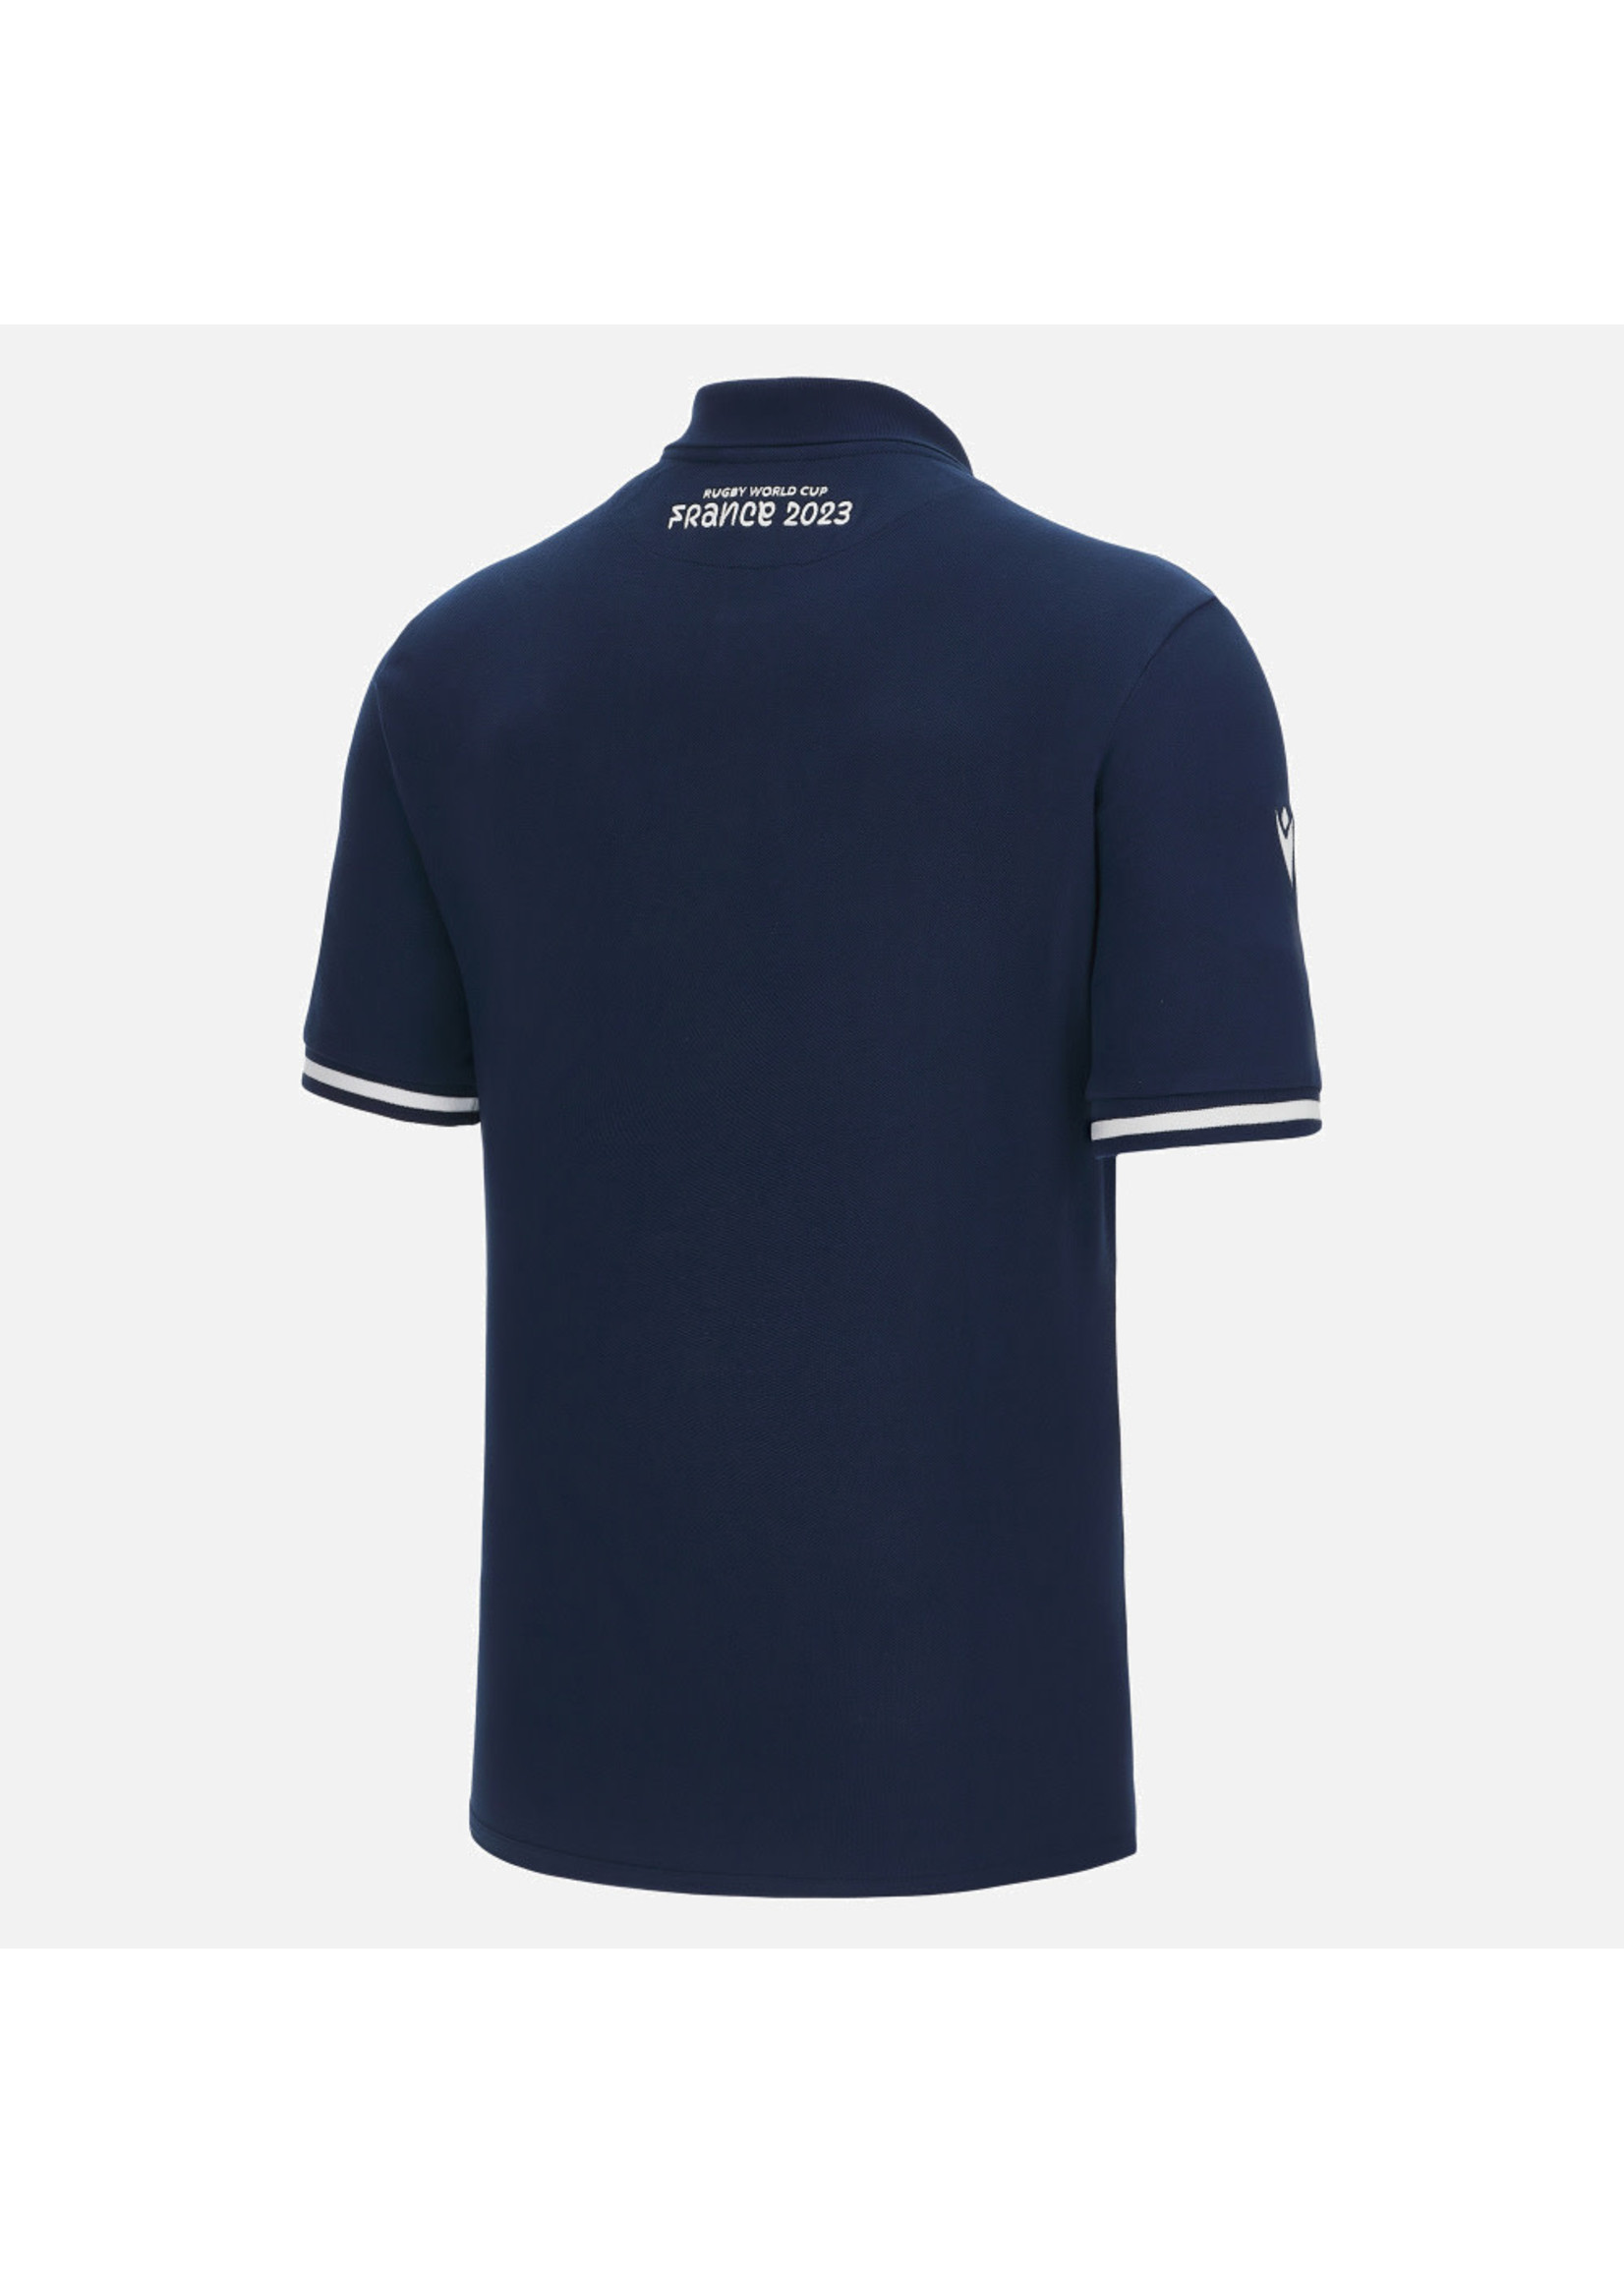 Macron Macron SRU RWC Cotton Polo Shirt (2023)